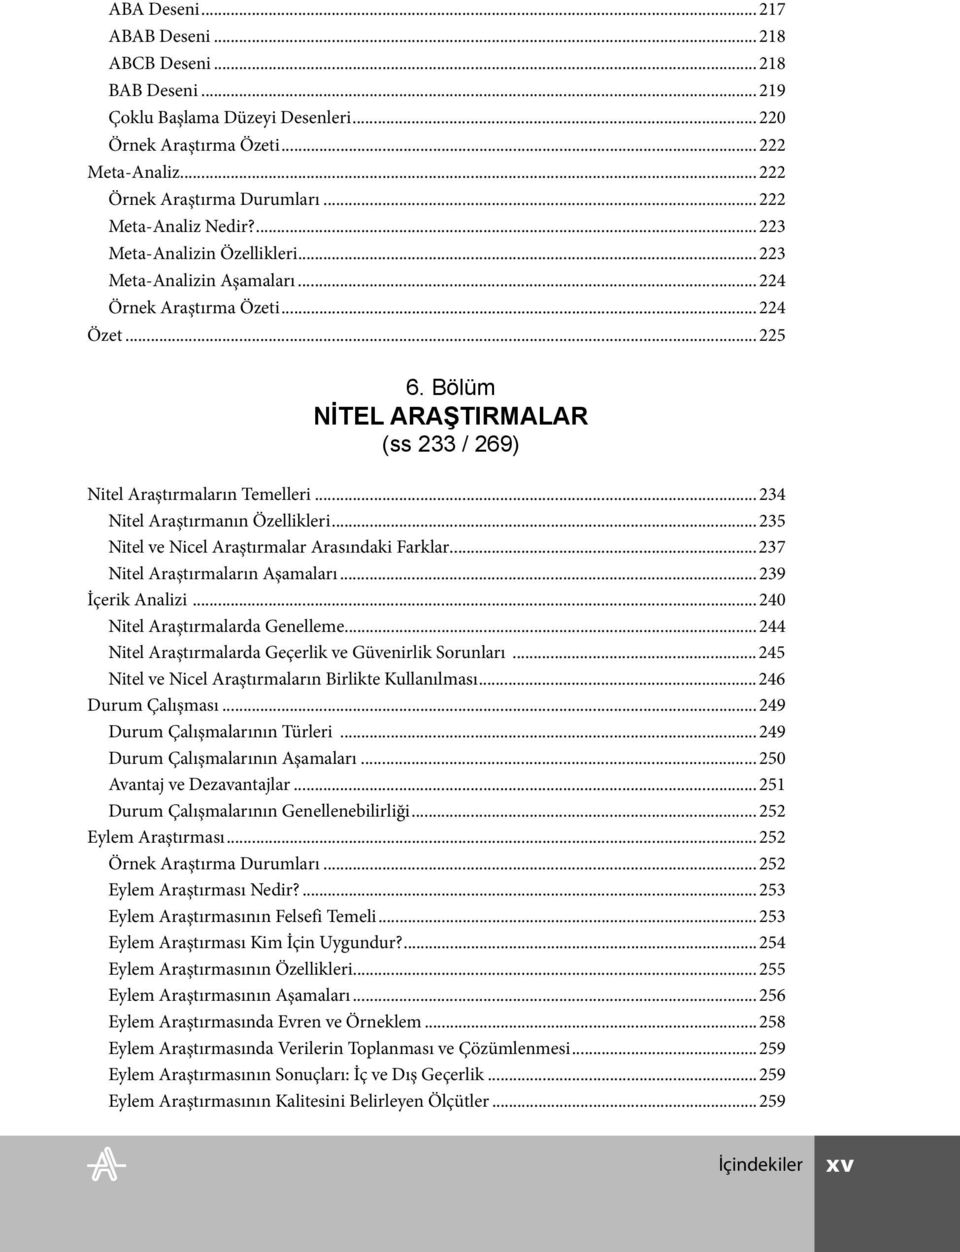 Bölüm NİTEL ARAŞTIRMALAR (ss 233 / 269) Nitel Araştırmaların Temelleri...234 Nitel Araştırmanın Özellikleri...235 Nitel ve Nicel Araştırmalar Arasındaki Farklar...237 Nitel Araştırmaların Aşamaları.